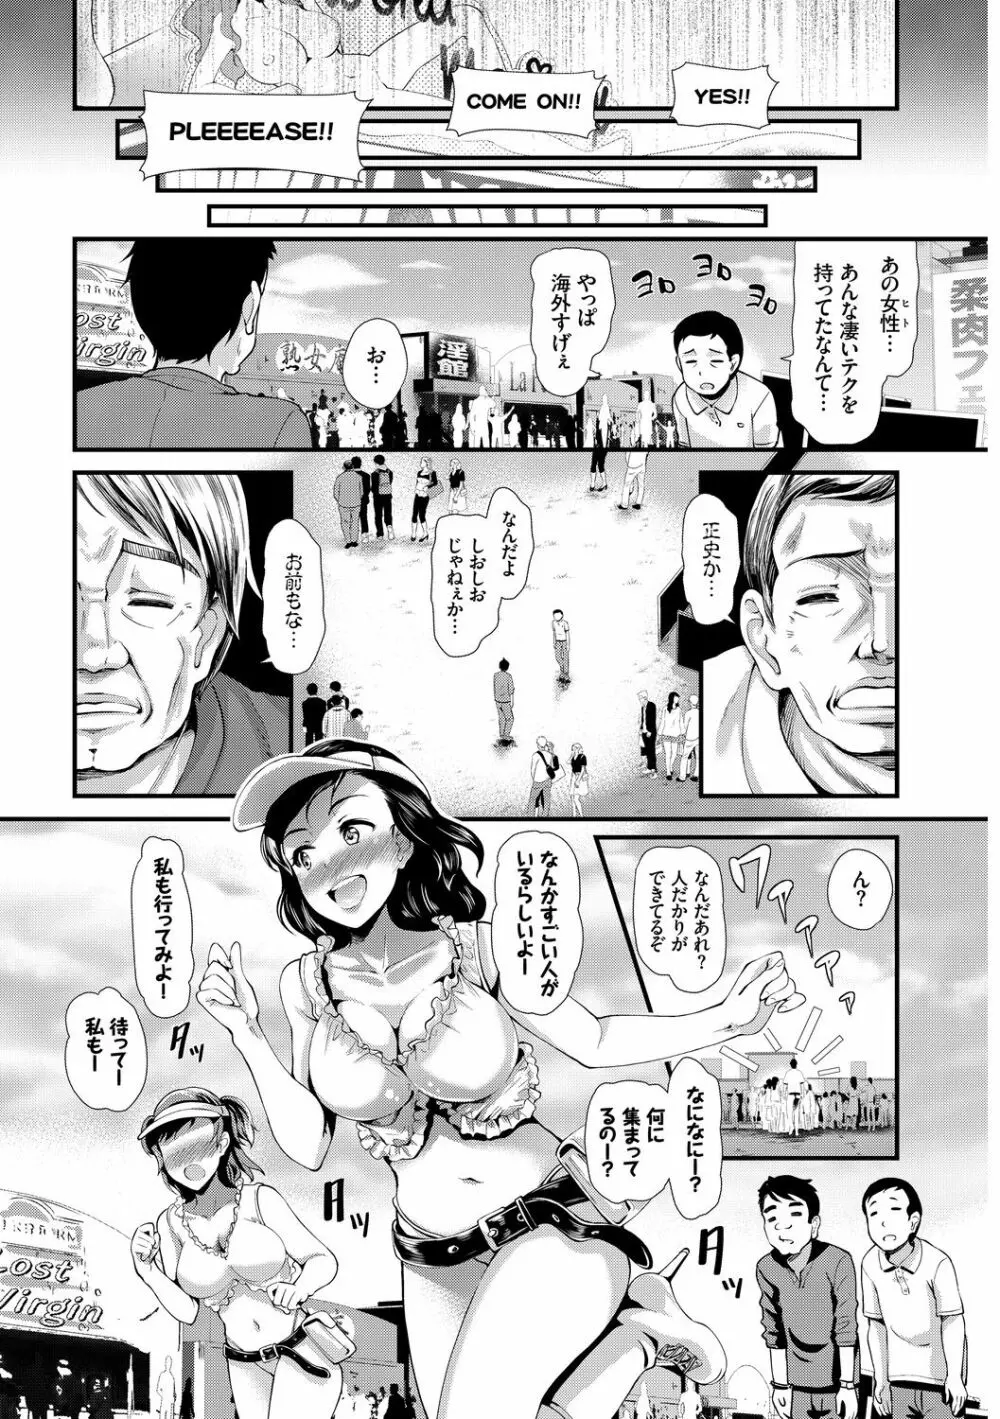 SEX中毒ッ!マジヤバ超絶ビッチ! Vol.7 58ページ